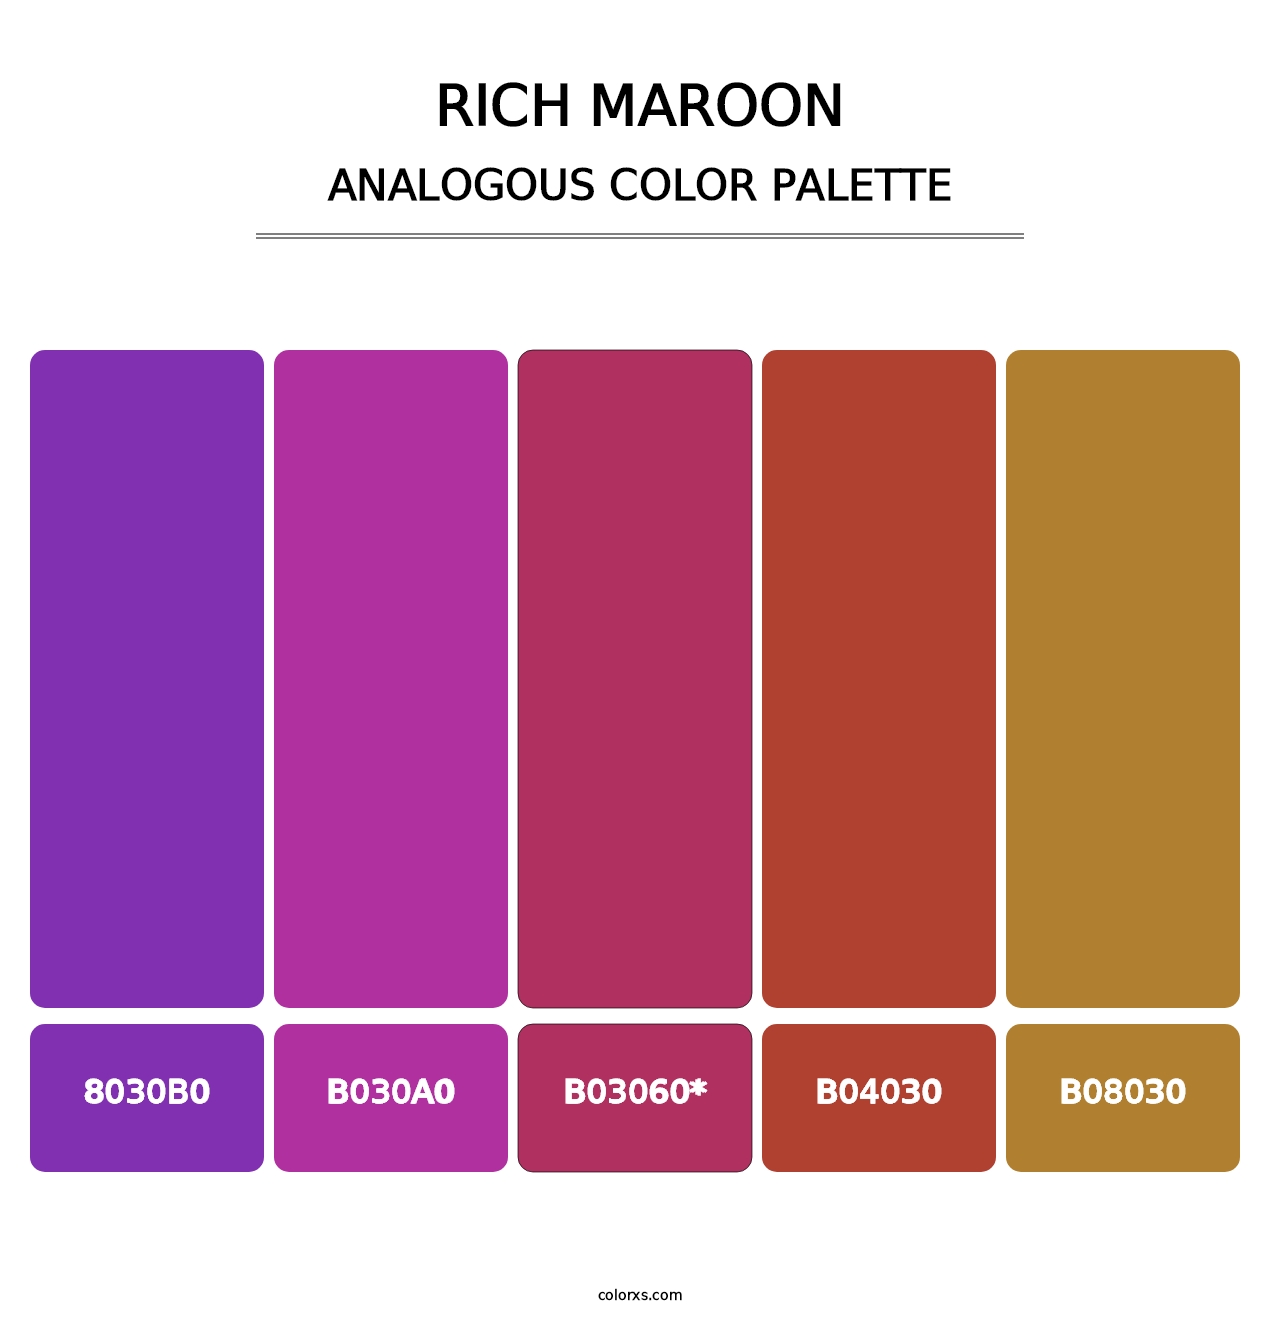 Rich Maroon - Analogous Color Palette